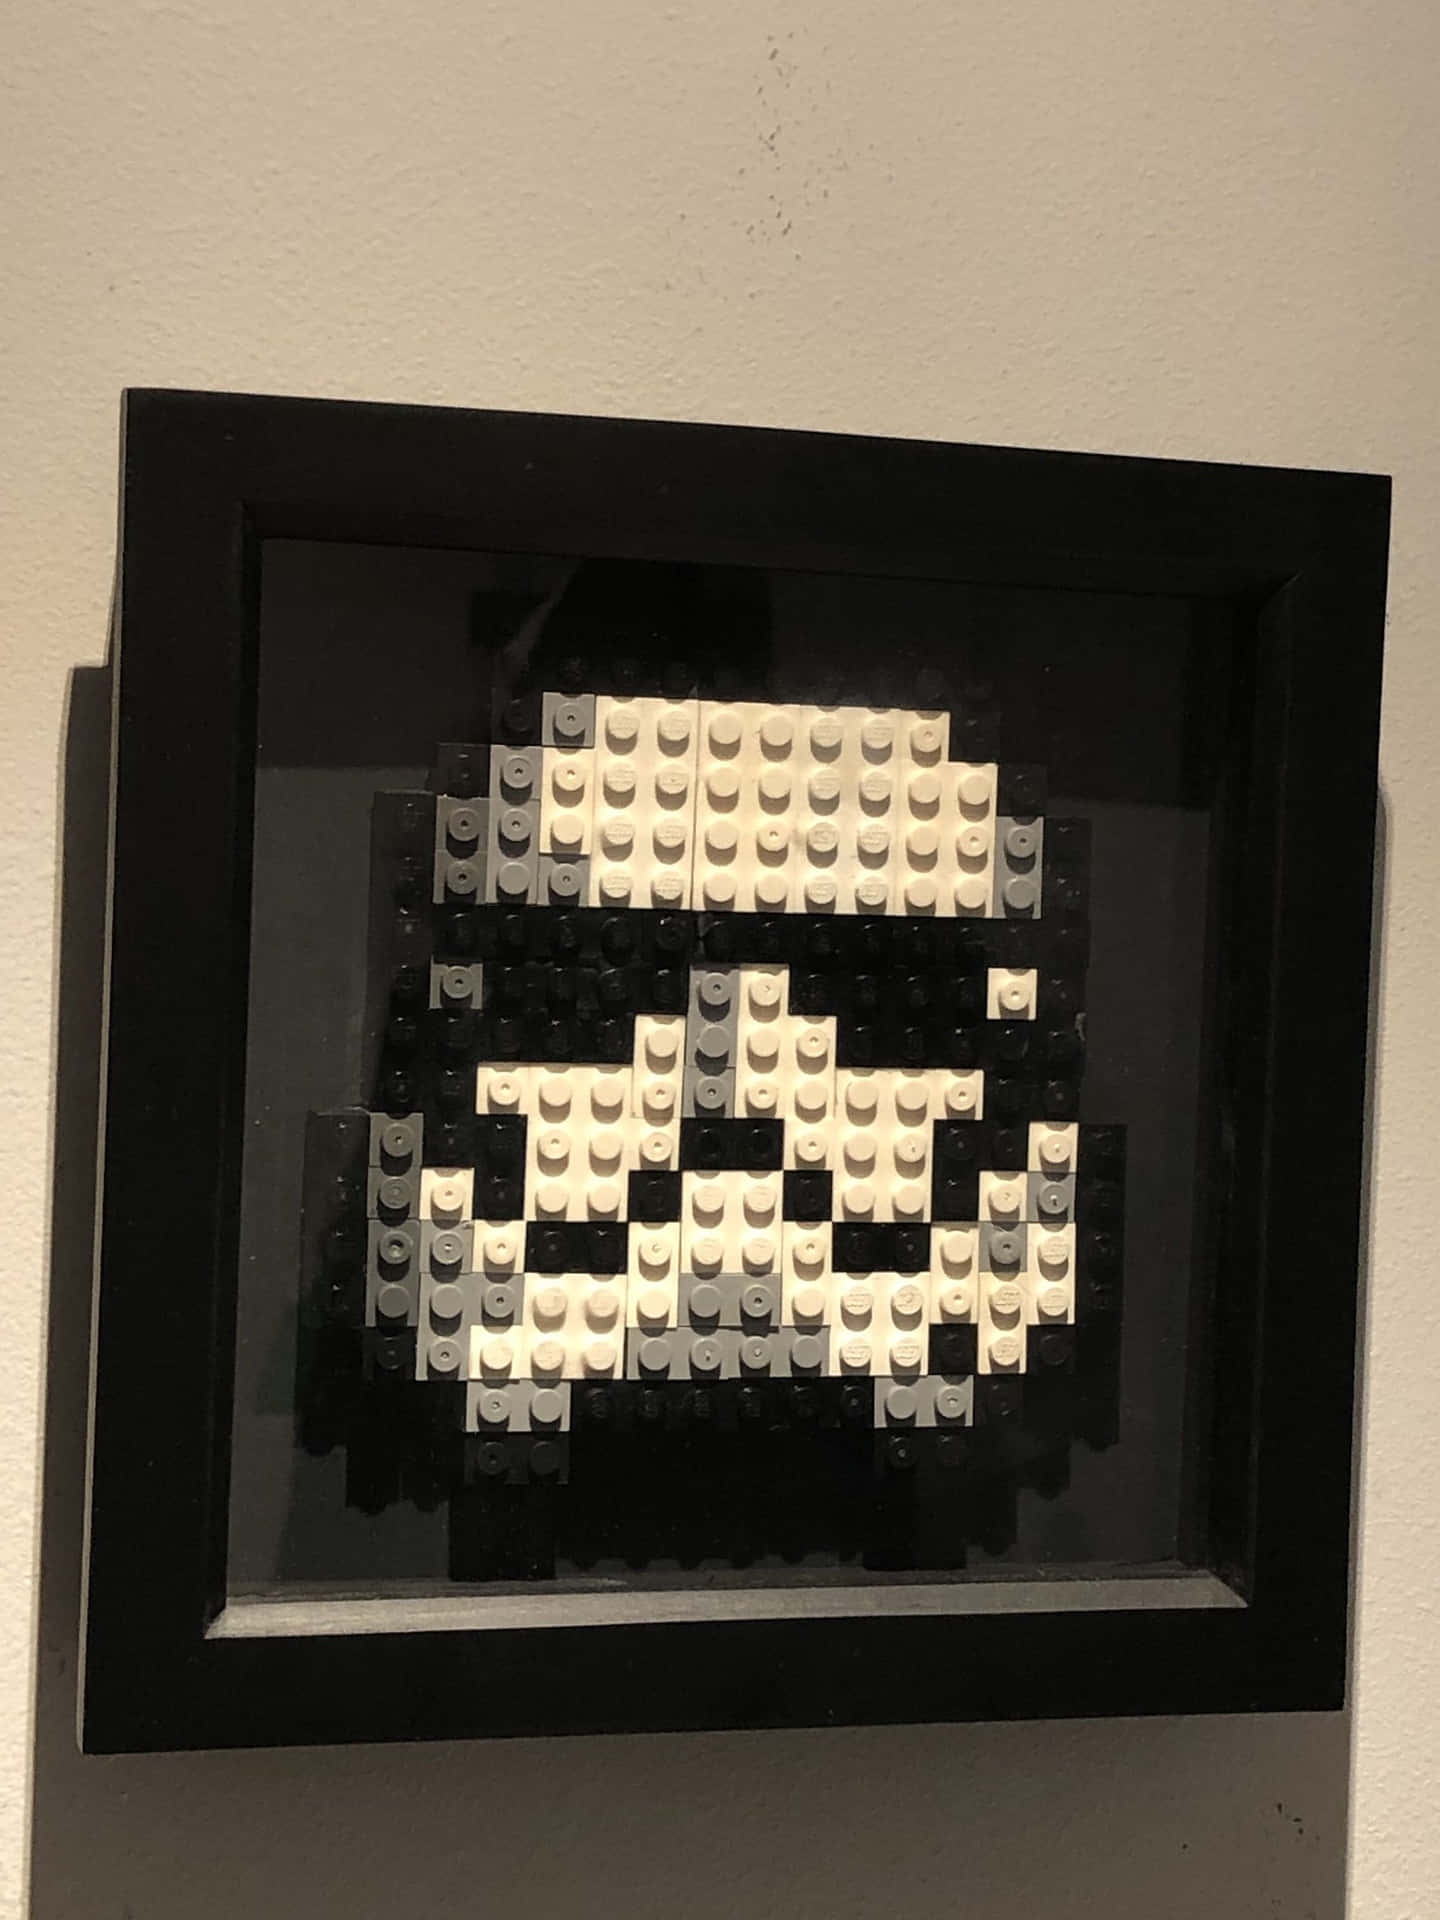 Unstormtrooper De Lego Está Enmarcado En Un Marco Negro.